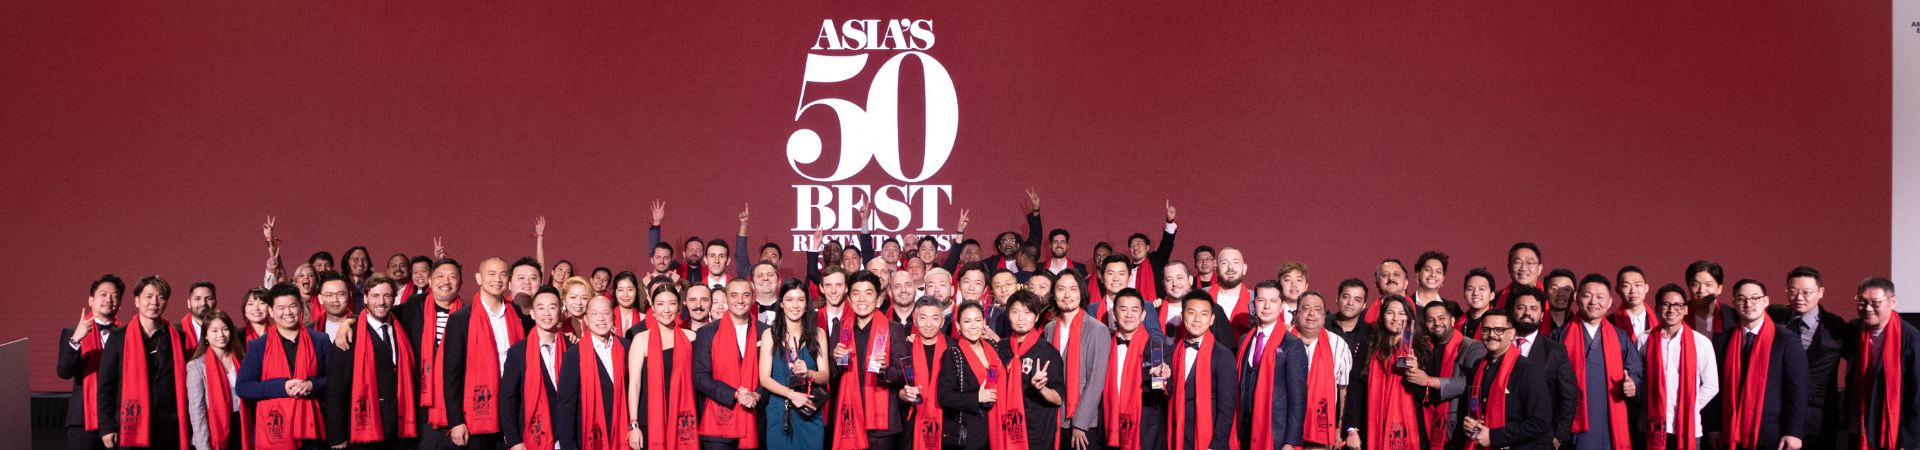 50 best restaurants in Asia